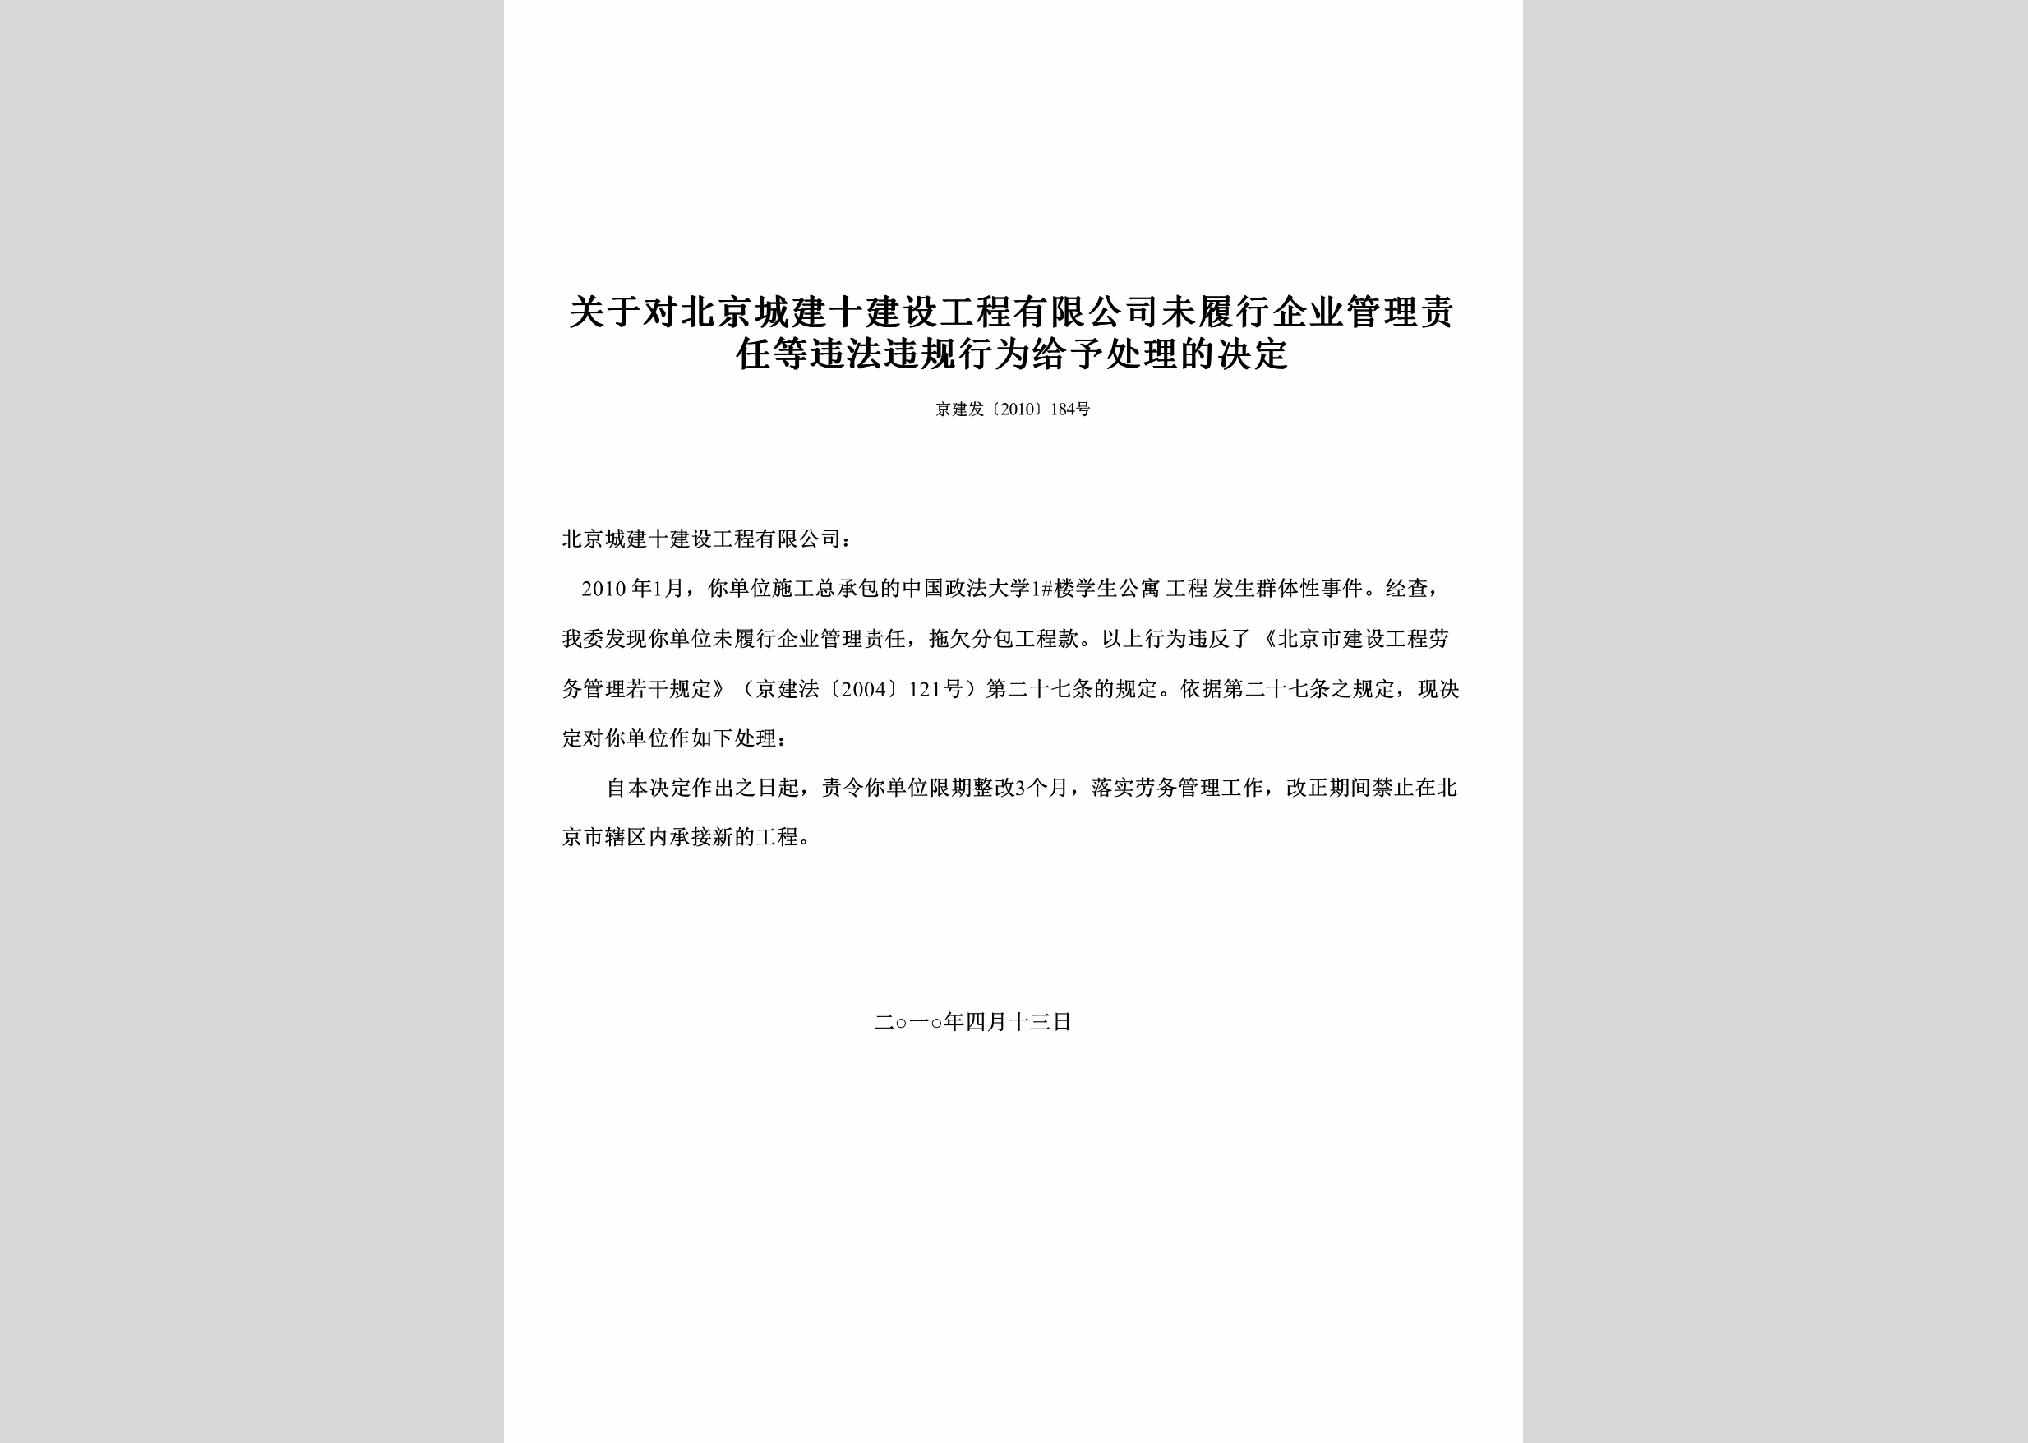 京建发[2010]184号：关于对北京城建十建设工程有限公司未履行企业管理责任等违法违规行为给予处理的决定